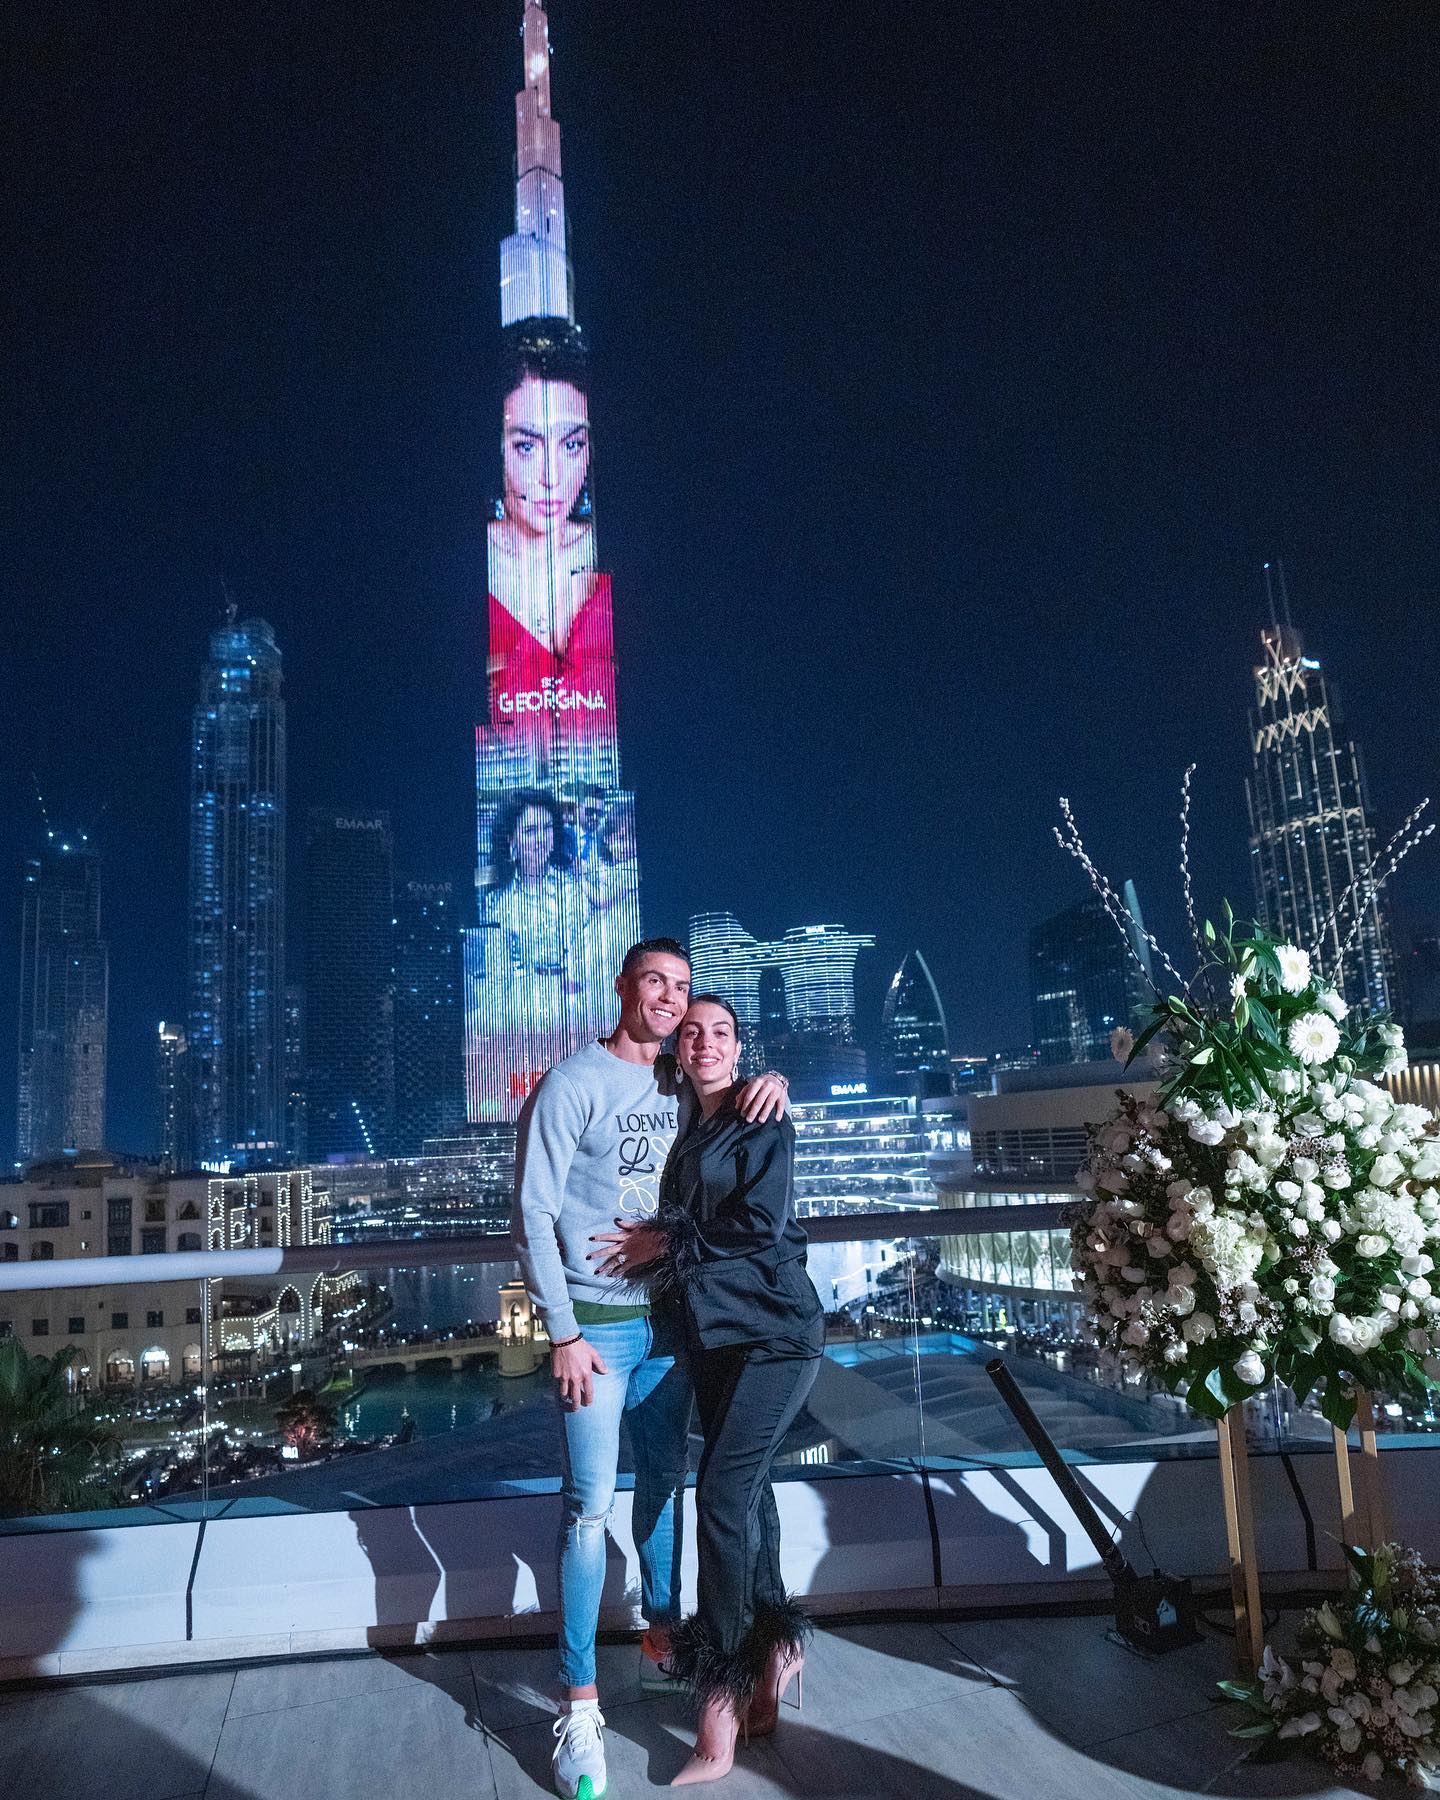 رونالدو وصديقته امام برج خليفة